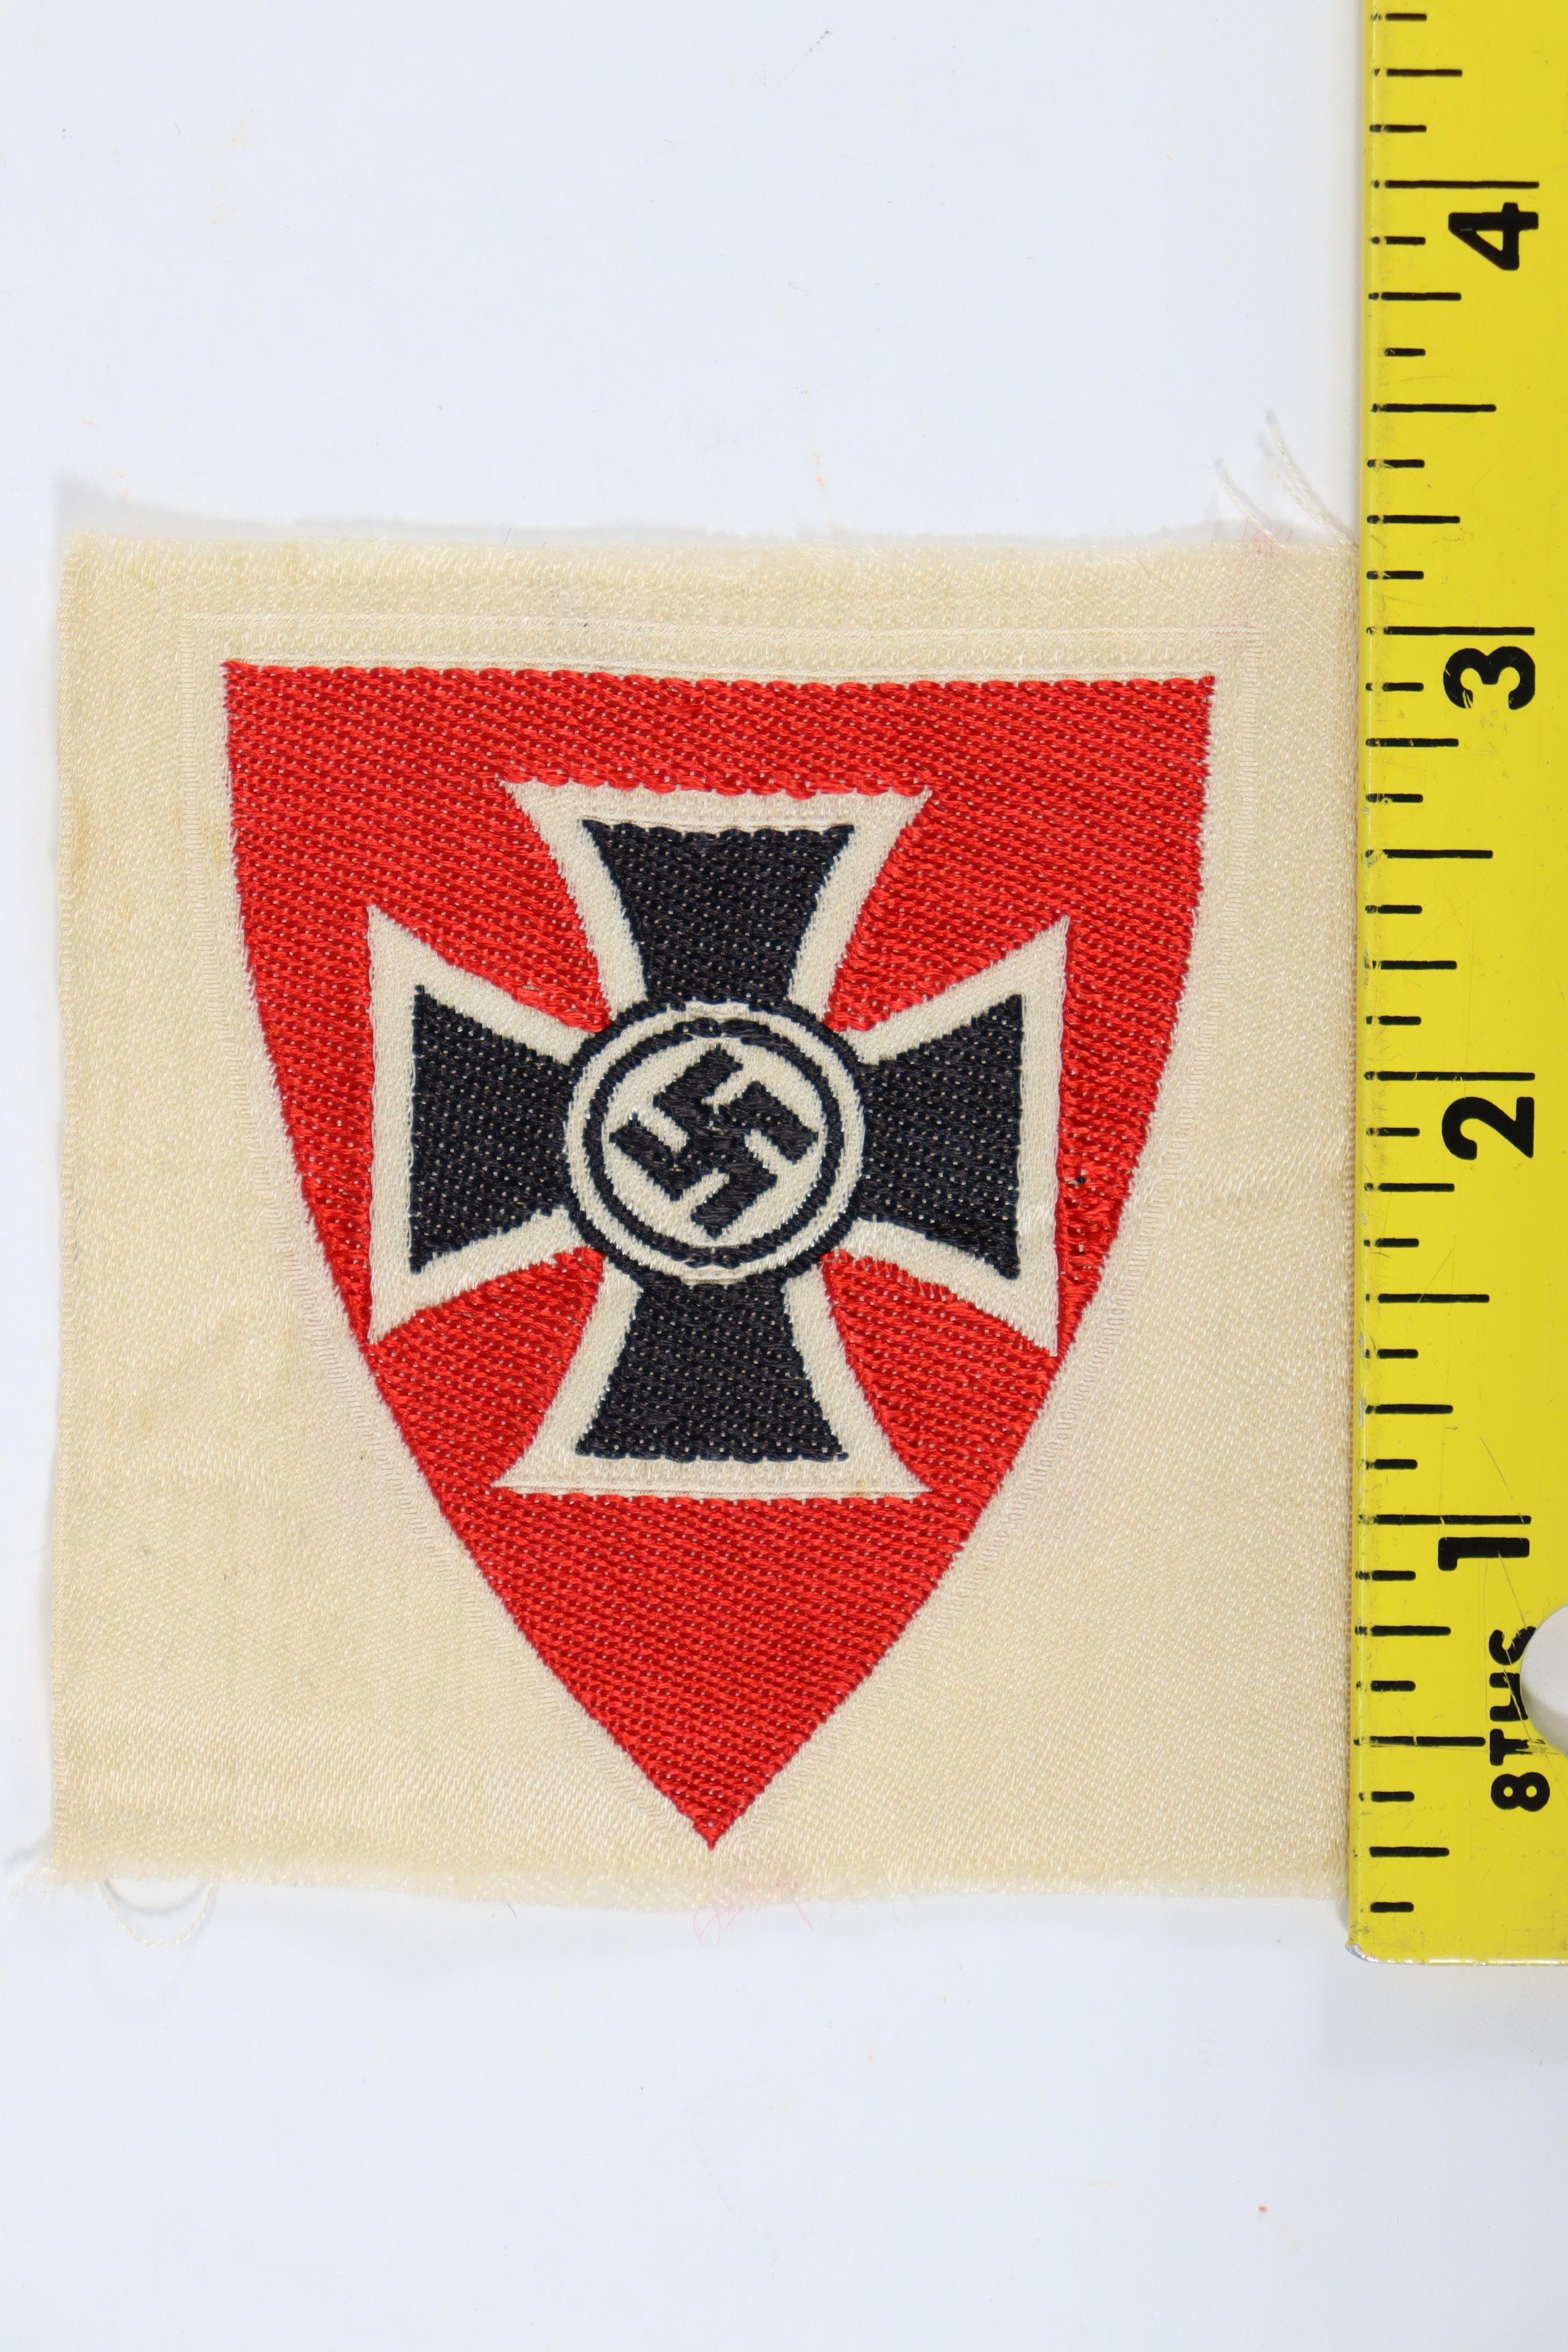 WWII Nazi Veteran's Patch